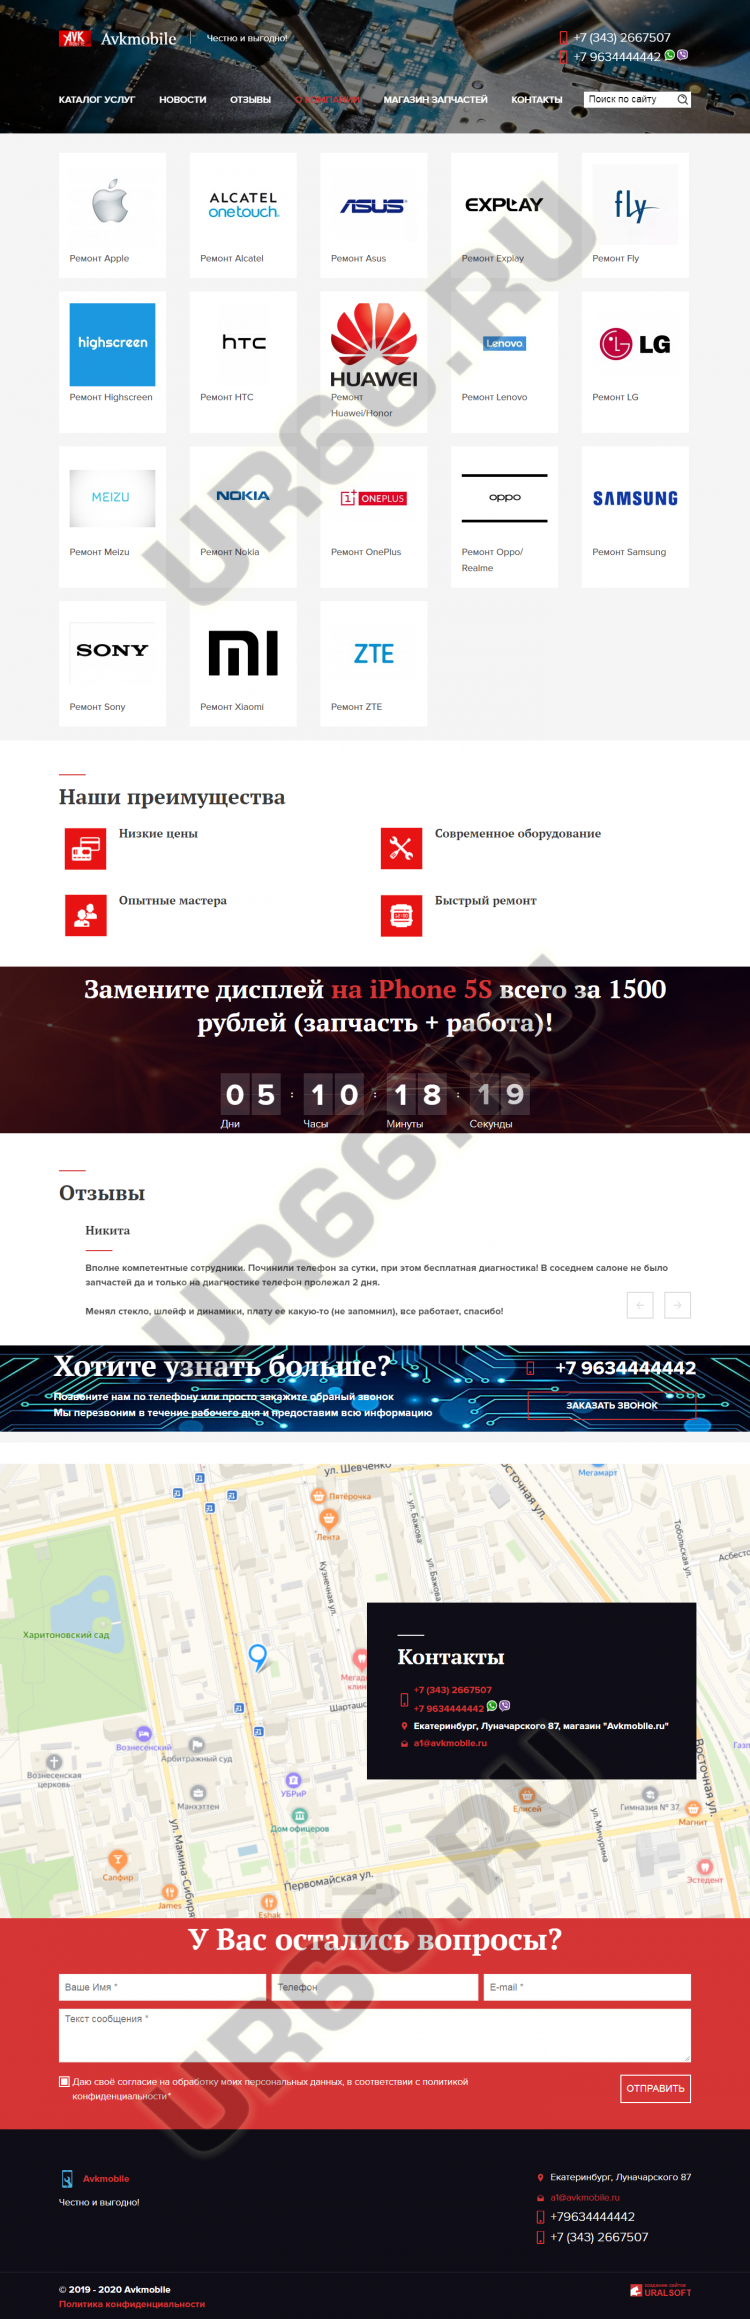       Avkremont, avkremont.ru, 2019  - UR66.RU, 